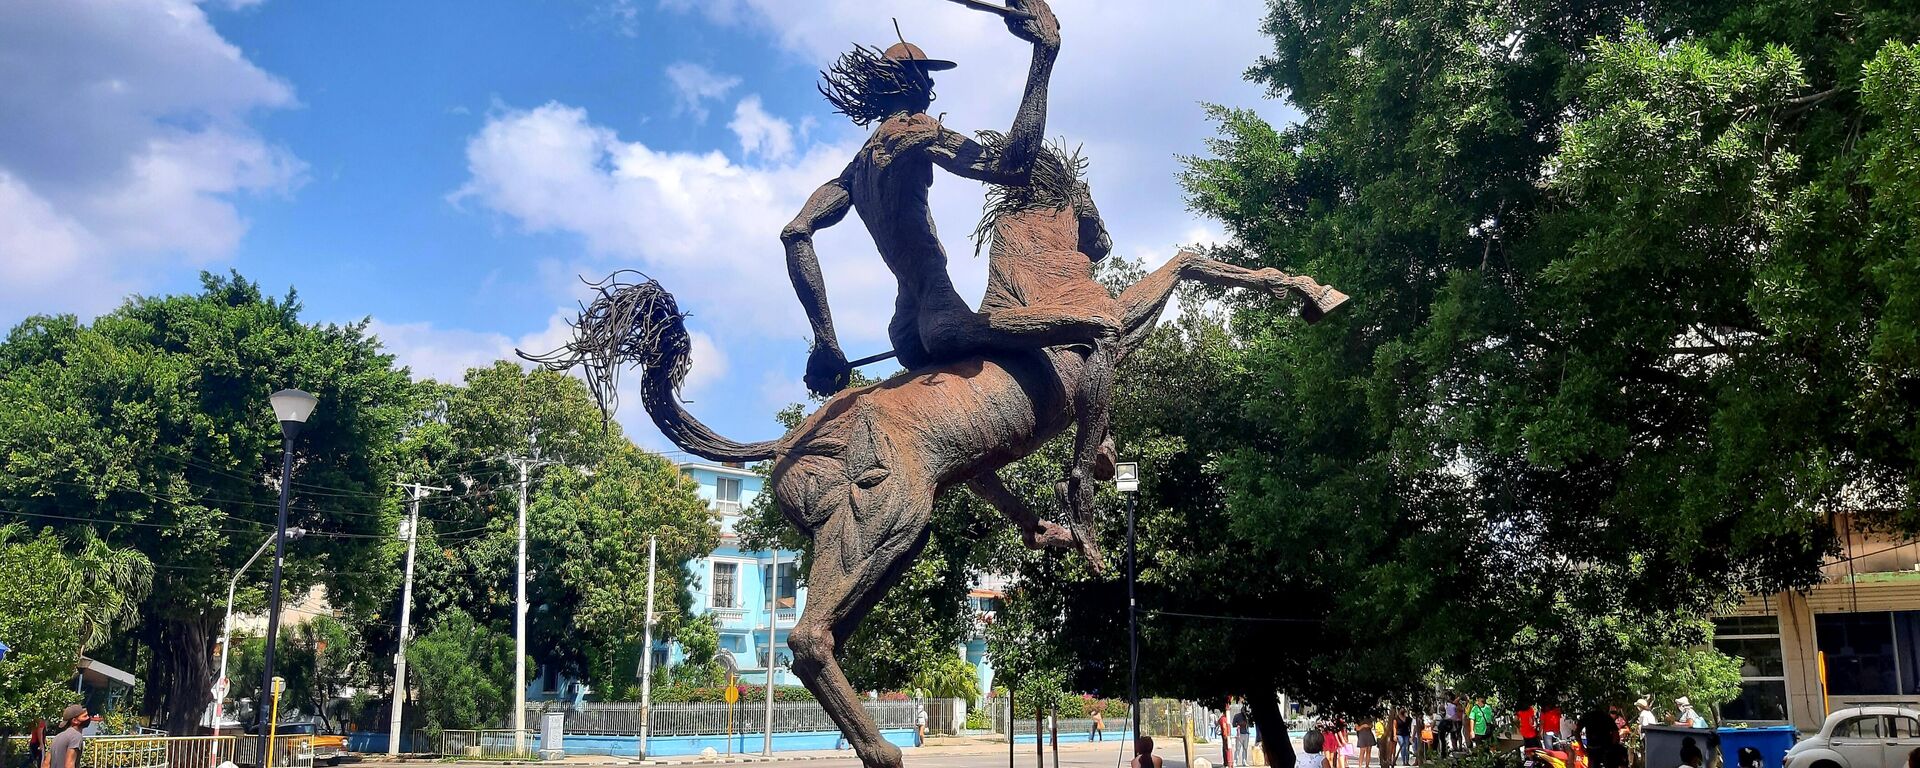 Estatua de Don Quijote de la Mancha, La Habana  - Sputnik Mundo, 1920, 01.03.2021